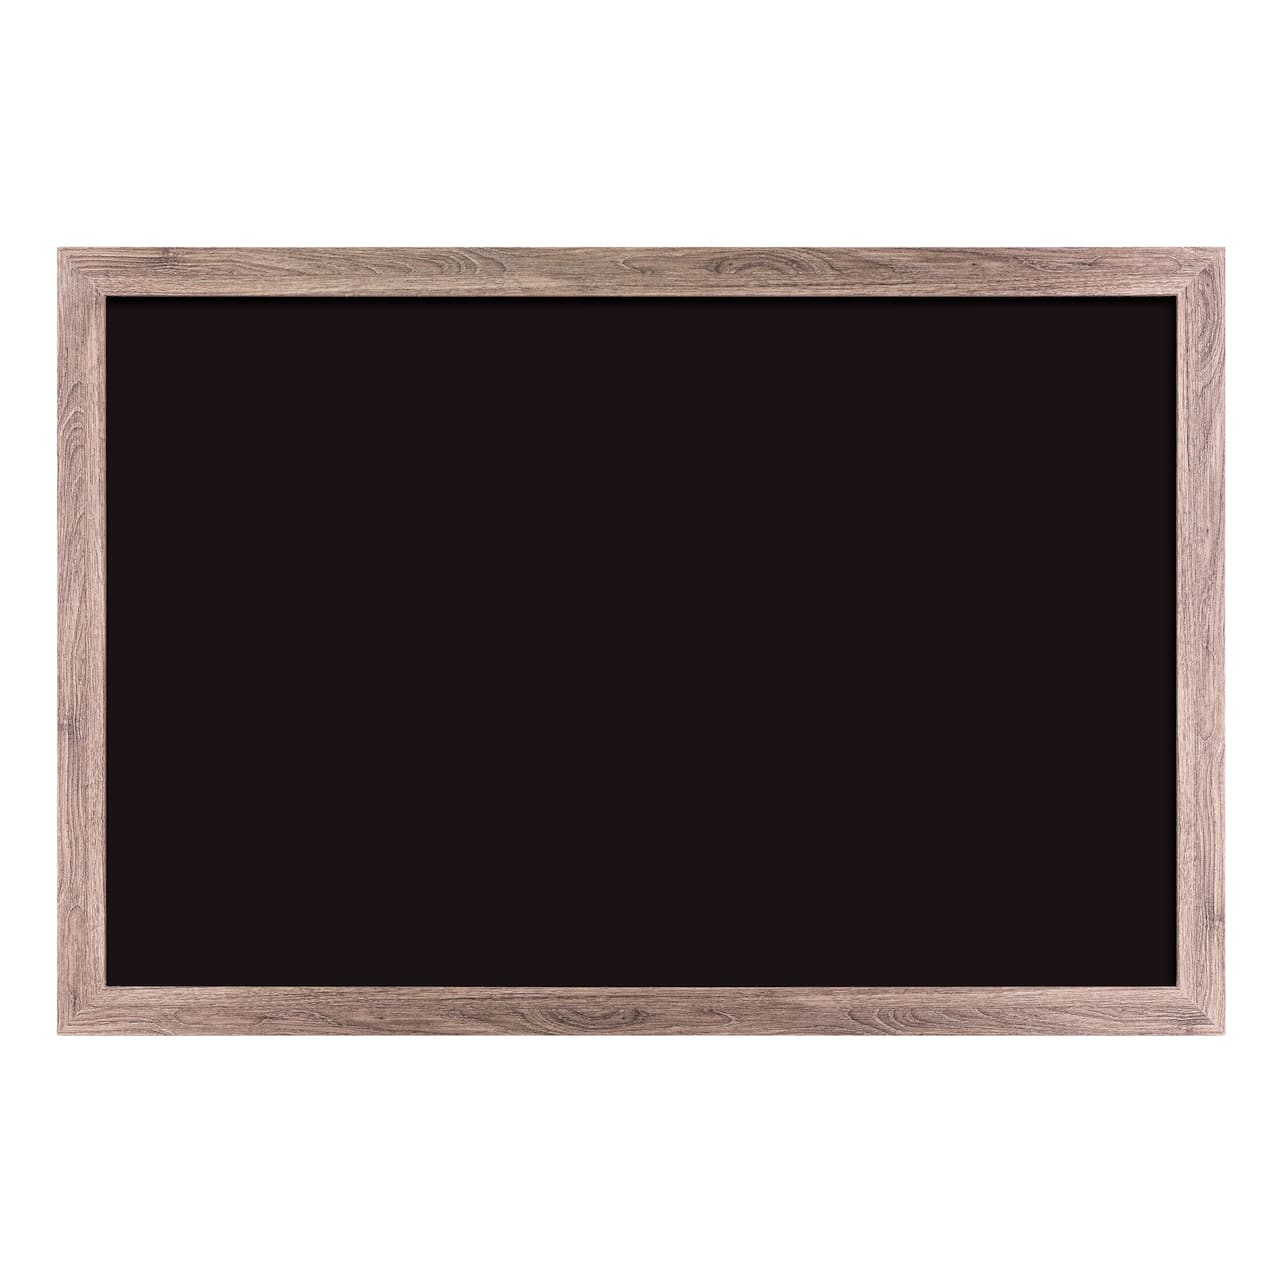 U Brands&#x2122; 36&#x27;&#x27; x 24&#x27;&#x27; Rustic Wood MDF Framed Chalkboard